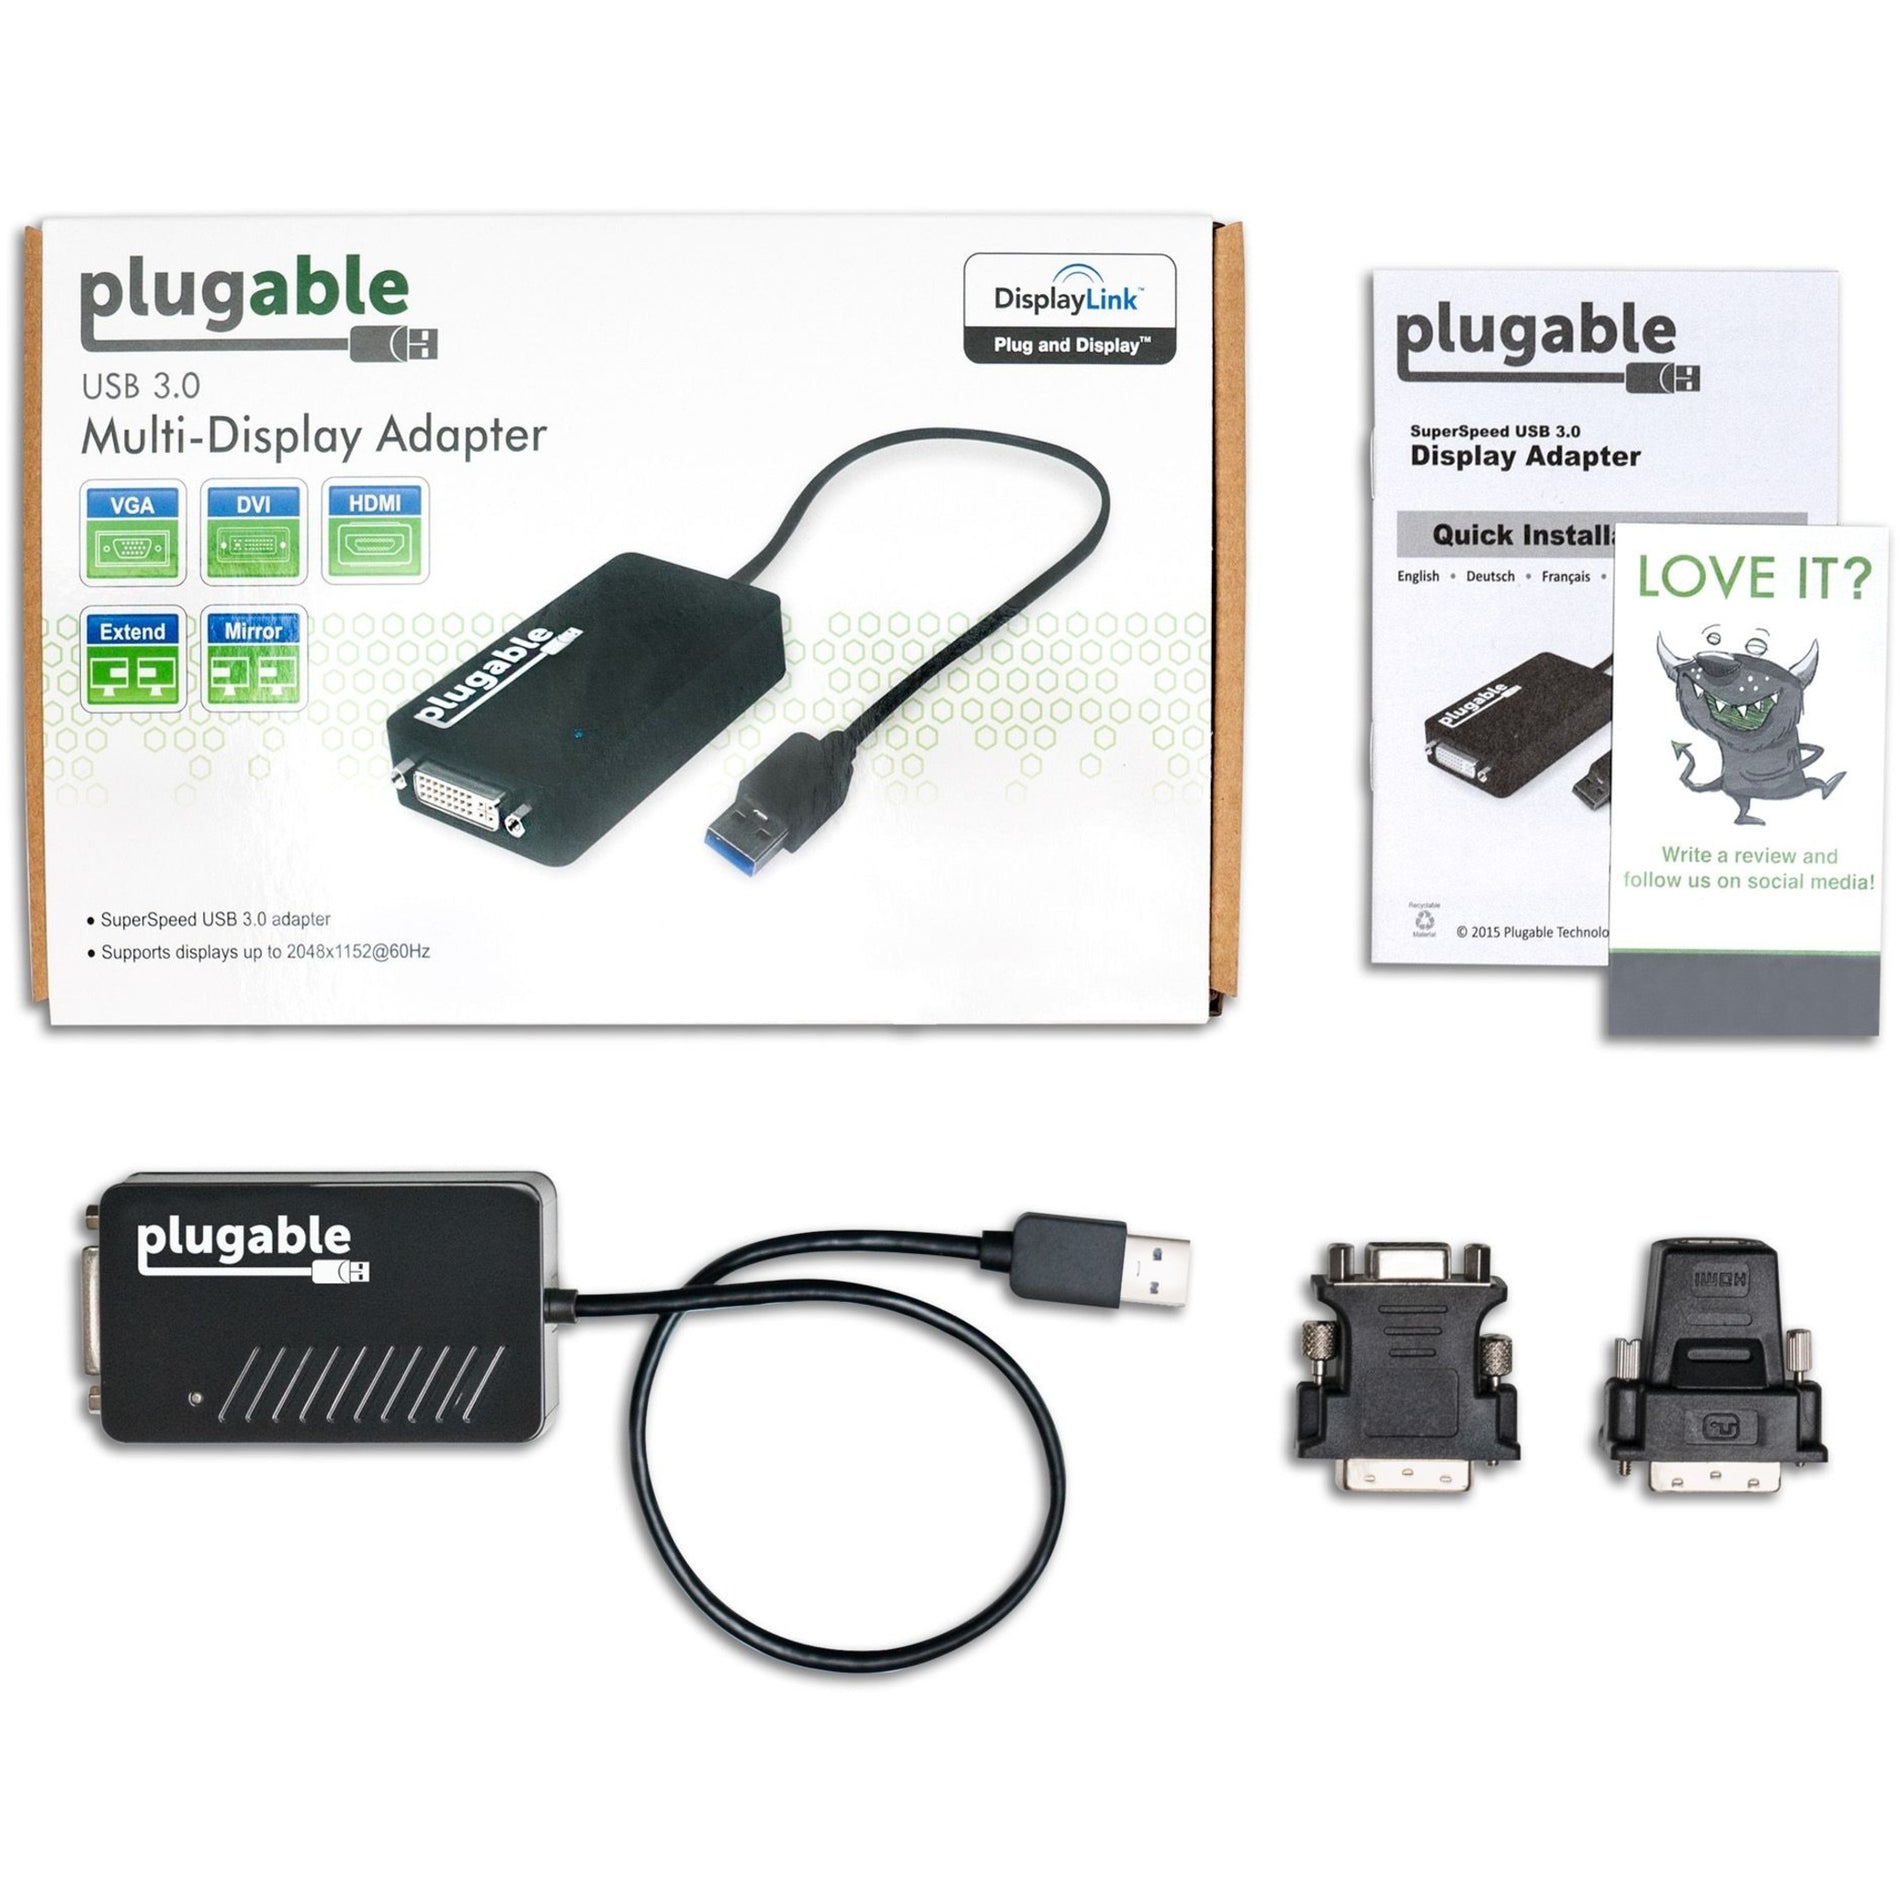 プラグイン可能 UGA-3000 USB 3.0 HDMI/DVI/VGA アダプター、複数のモニター用の簡単なディスプレイ拡張用 PC ブランド名: Plugable  プラグイン可能 UGA-3000 USB 3.0 HDMI/DVI/VGA アダプター、複数のモニター用の簡単なディスプレイ拡張用 PC ブランド名: プラグラブル